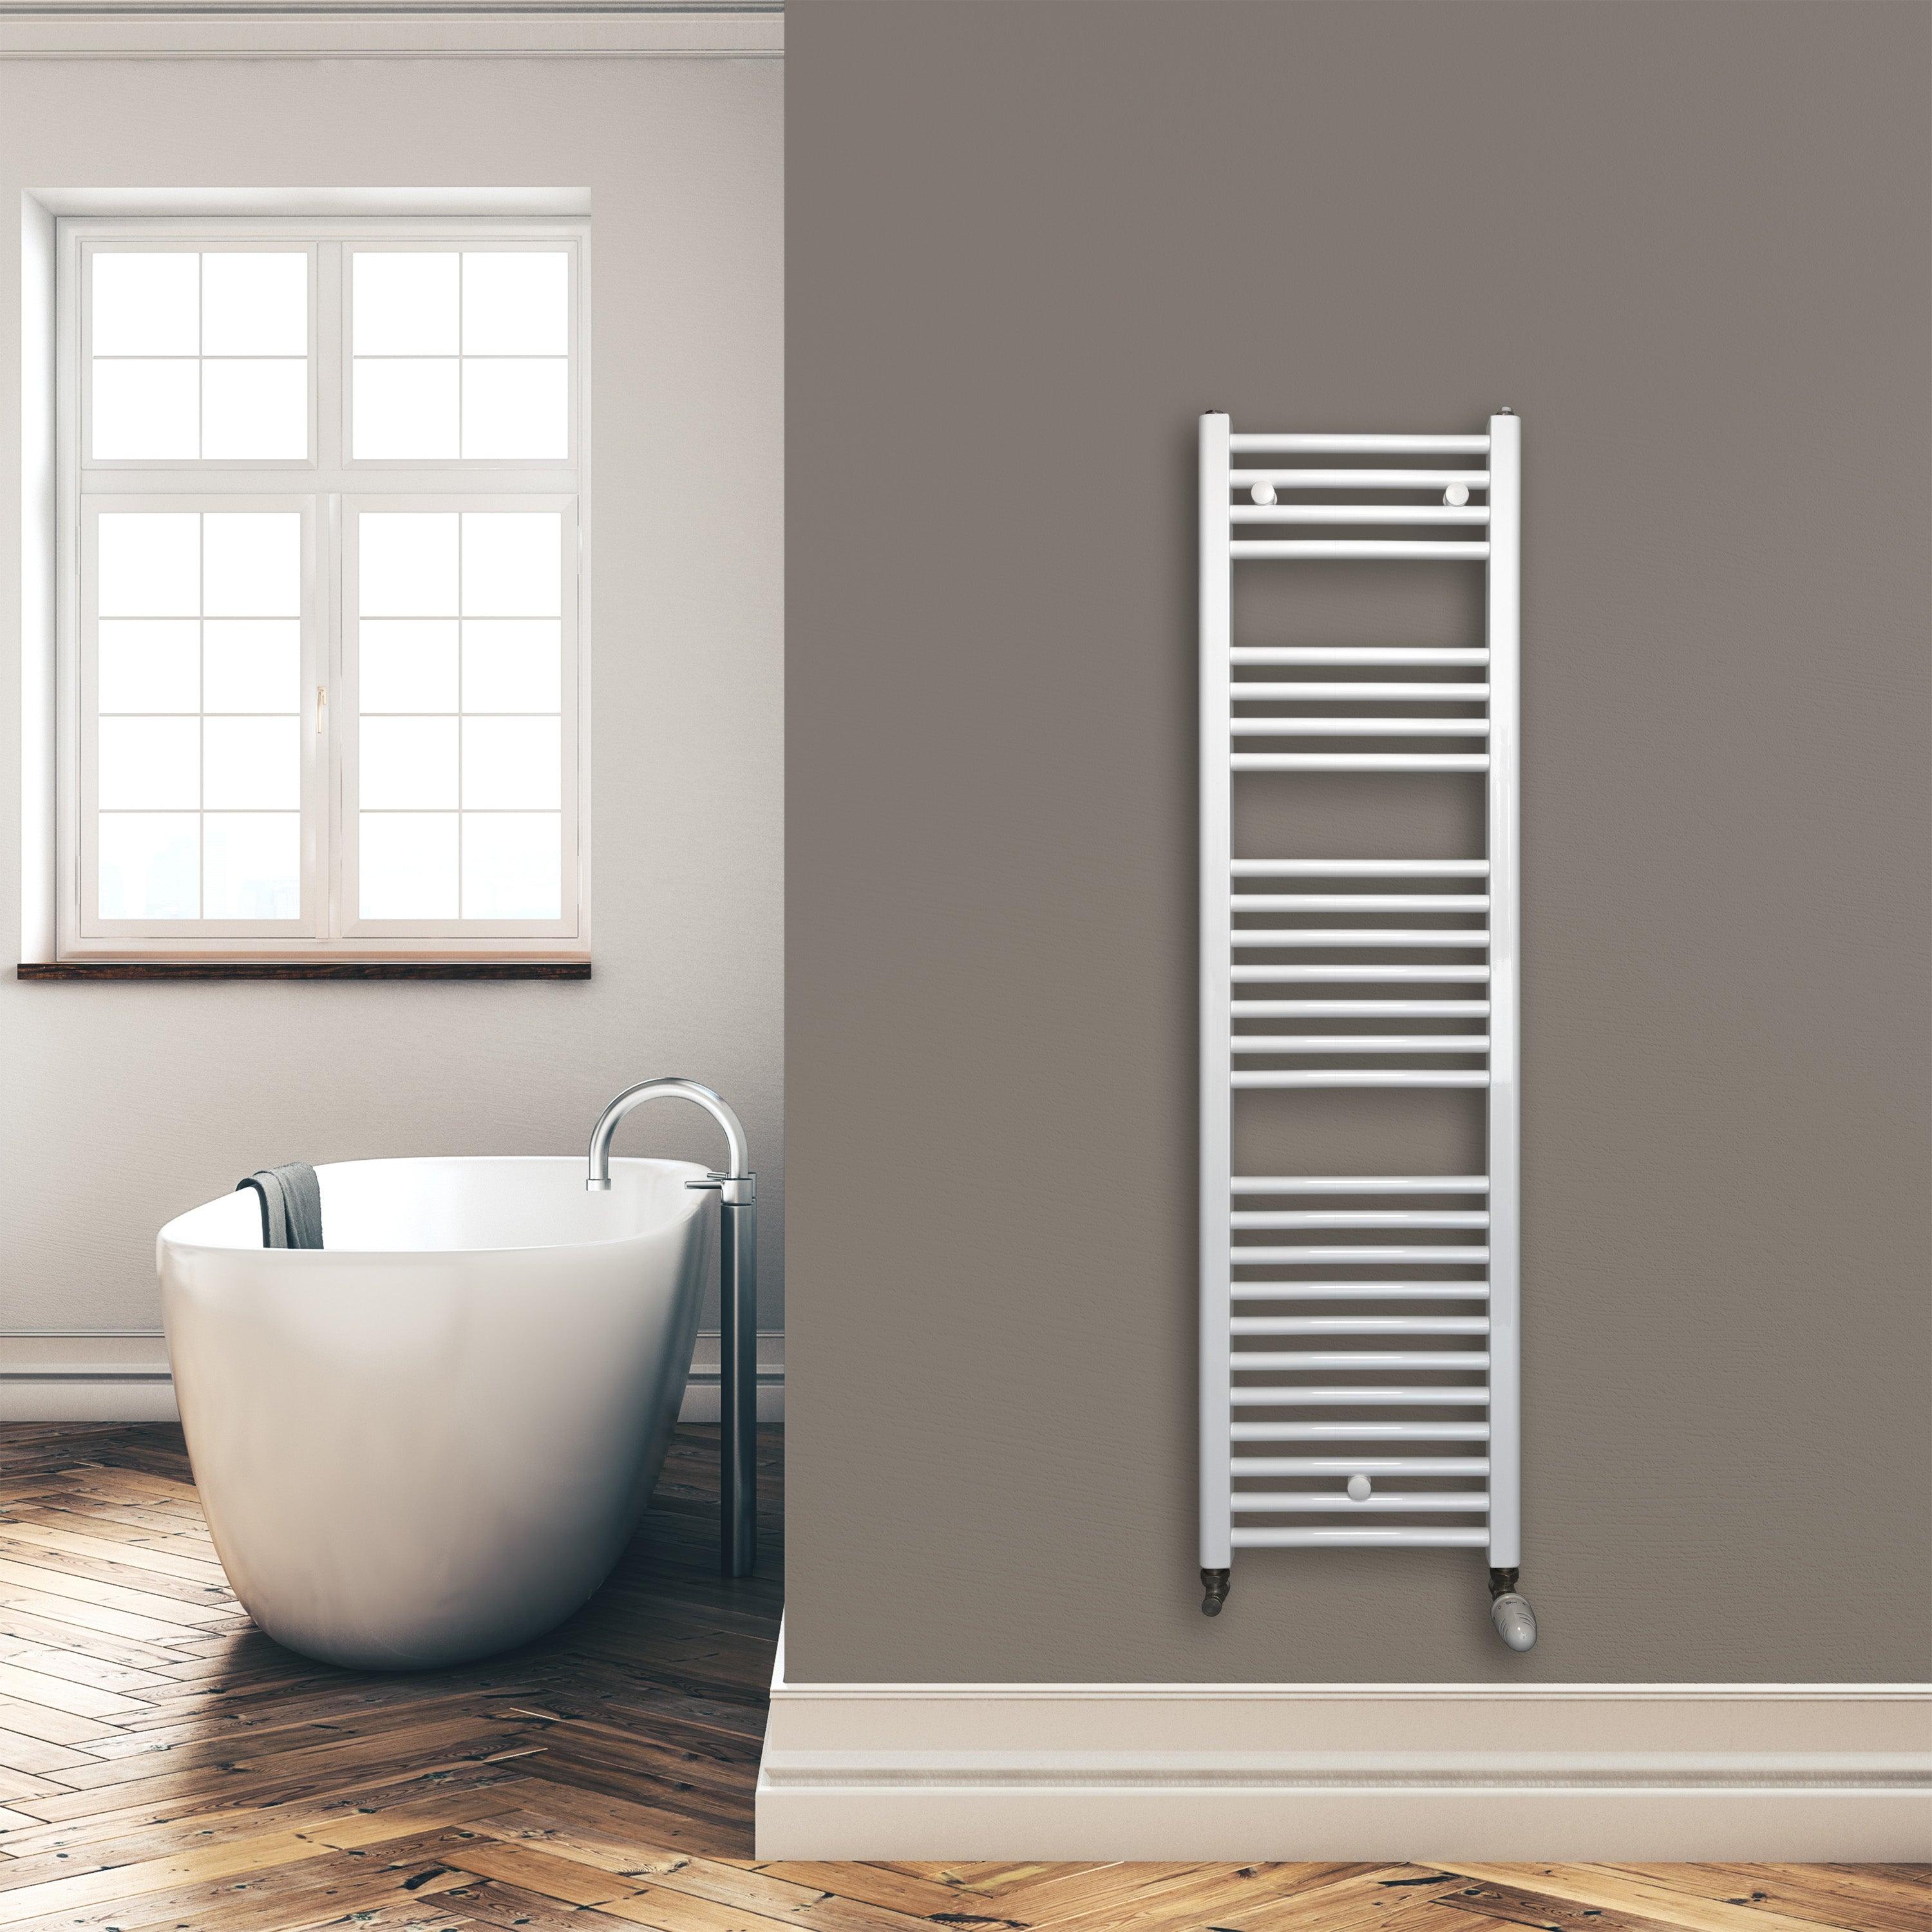 Badheizkörper 1424 x 400 mm gerade mit Standardanschluss Handtuchhalter Badezimmer Heizung Handtuchwärmer weiß Montagebeispiel - heizkoerper.shop